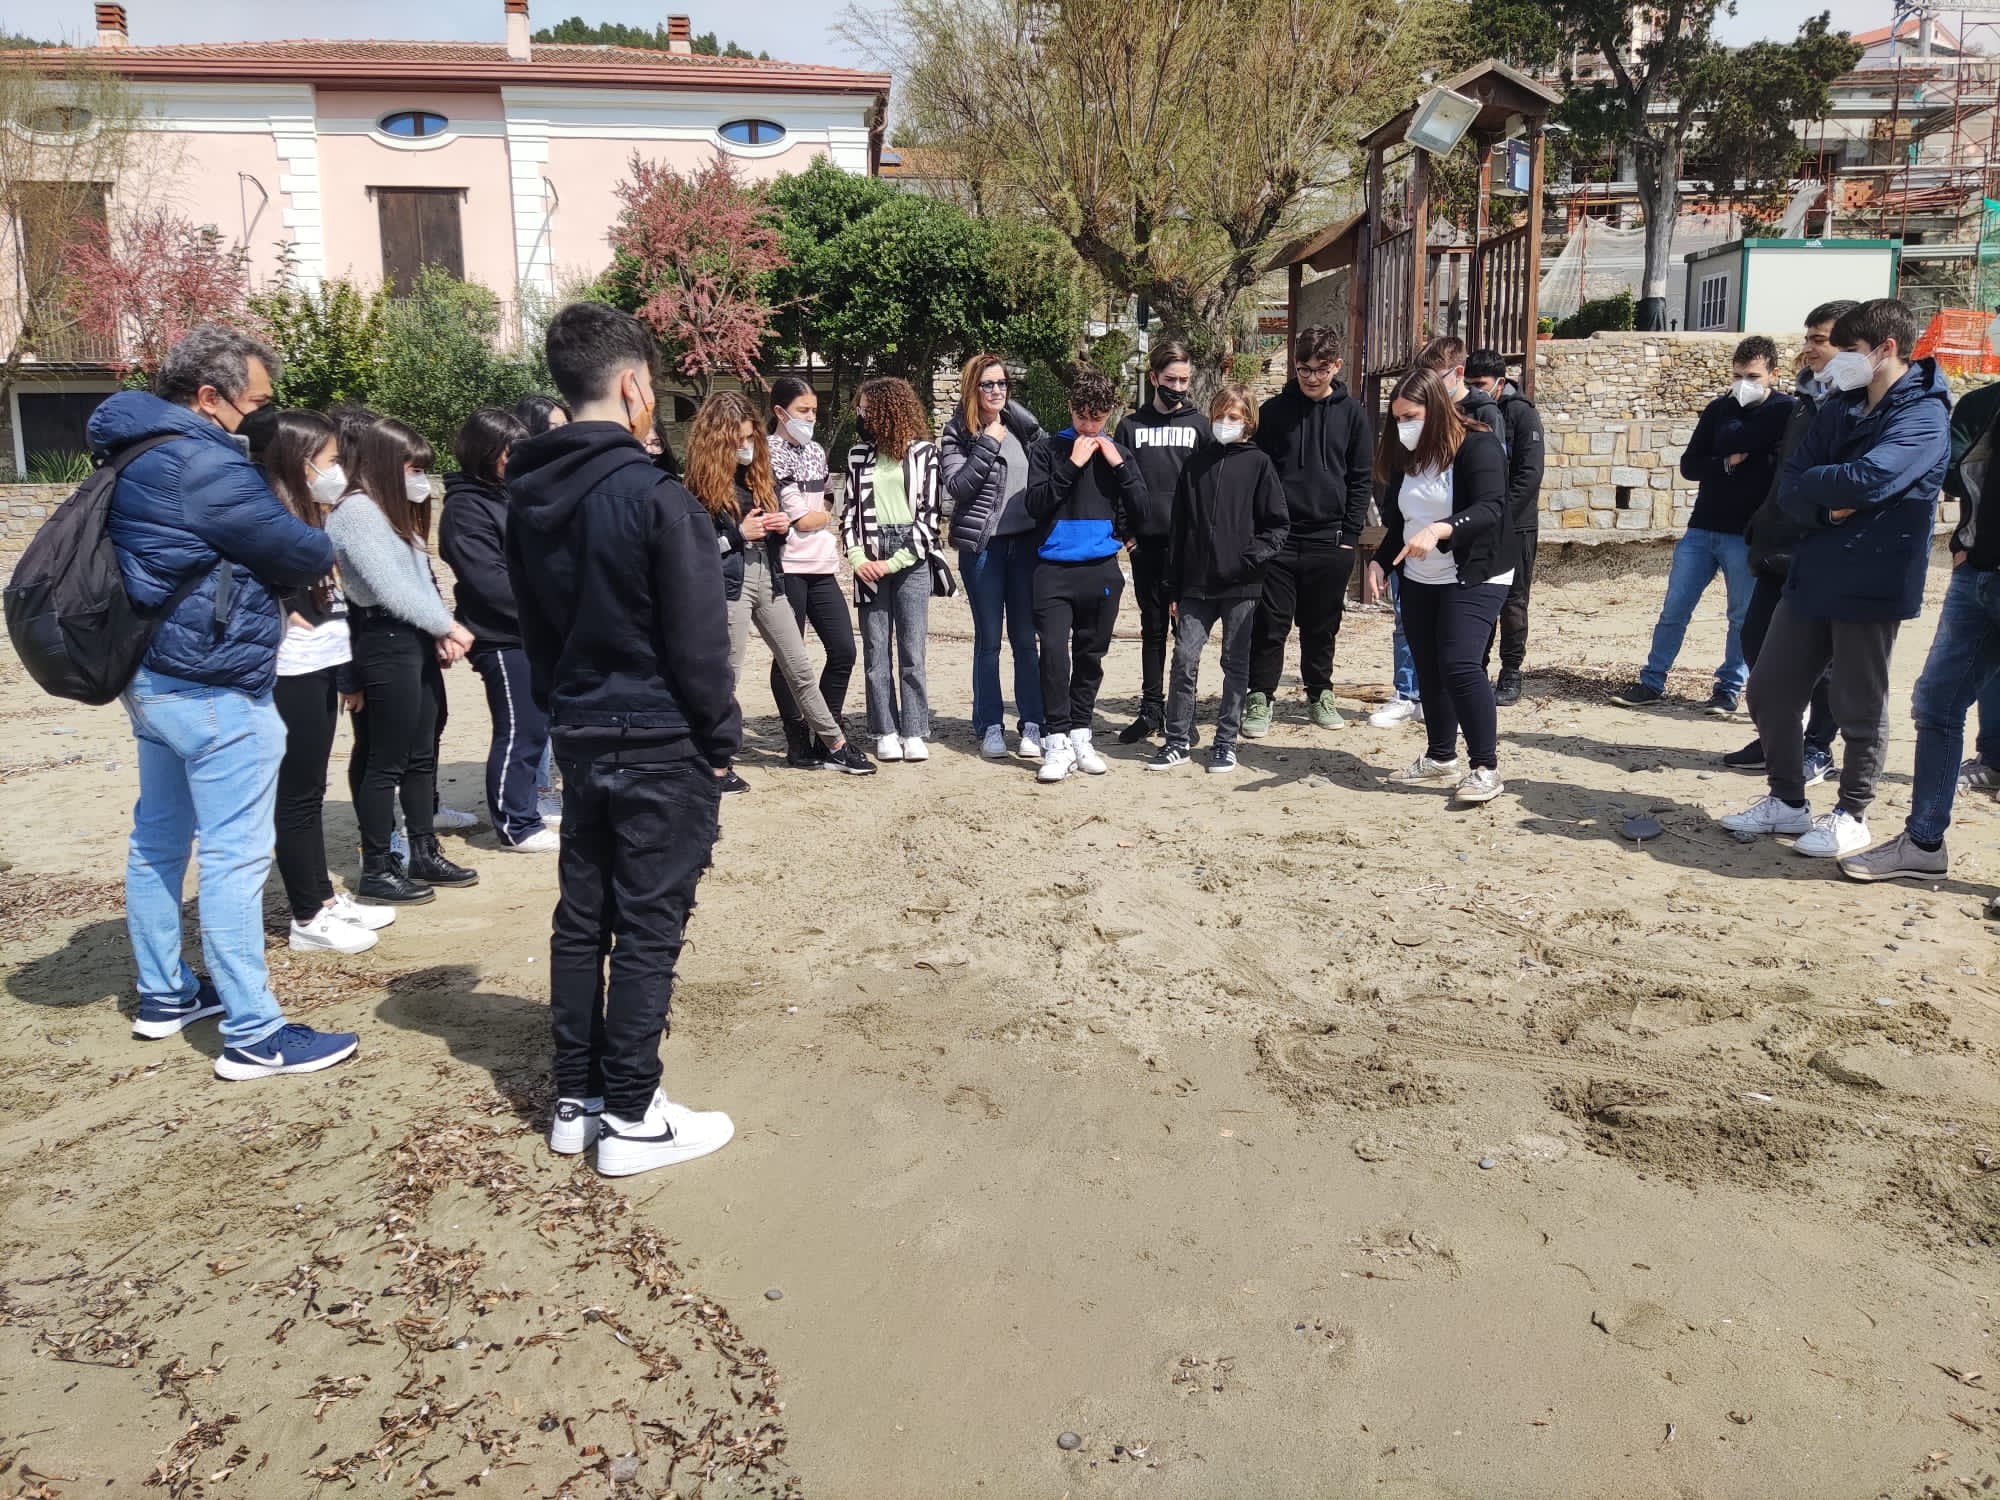 Studenti di Pollica diventano tartawatcher, “avvistatori” di tartarughe Caretta Caretta